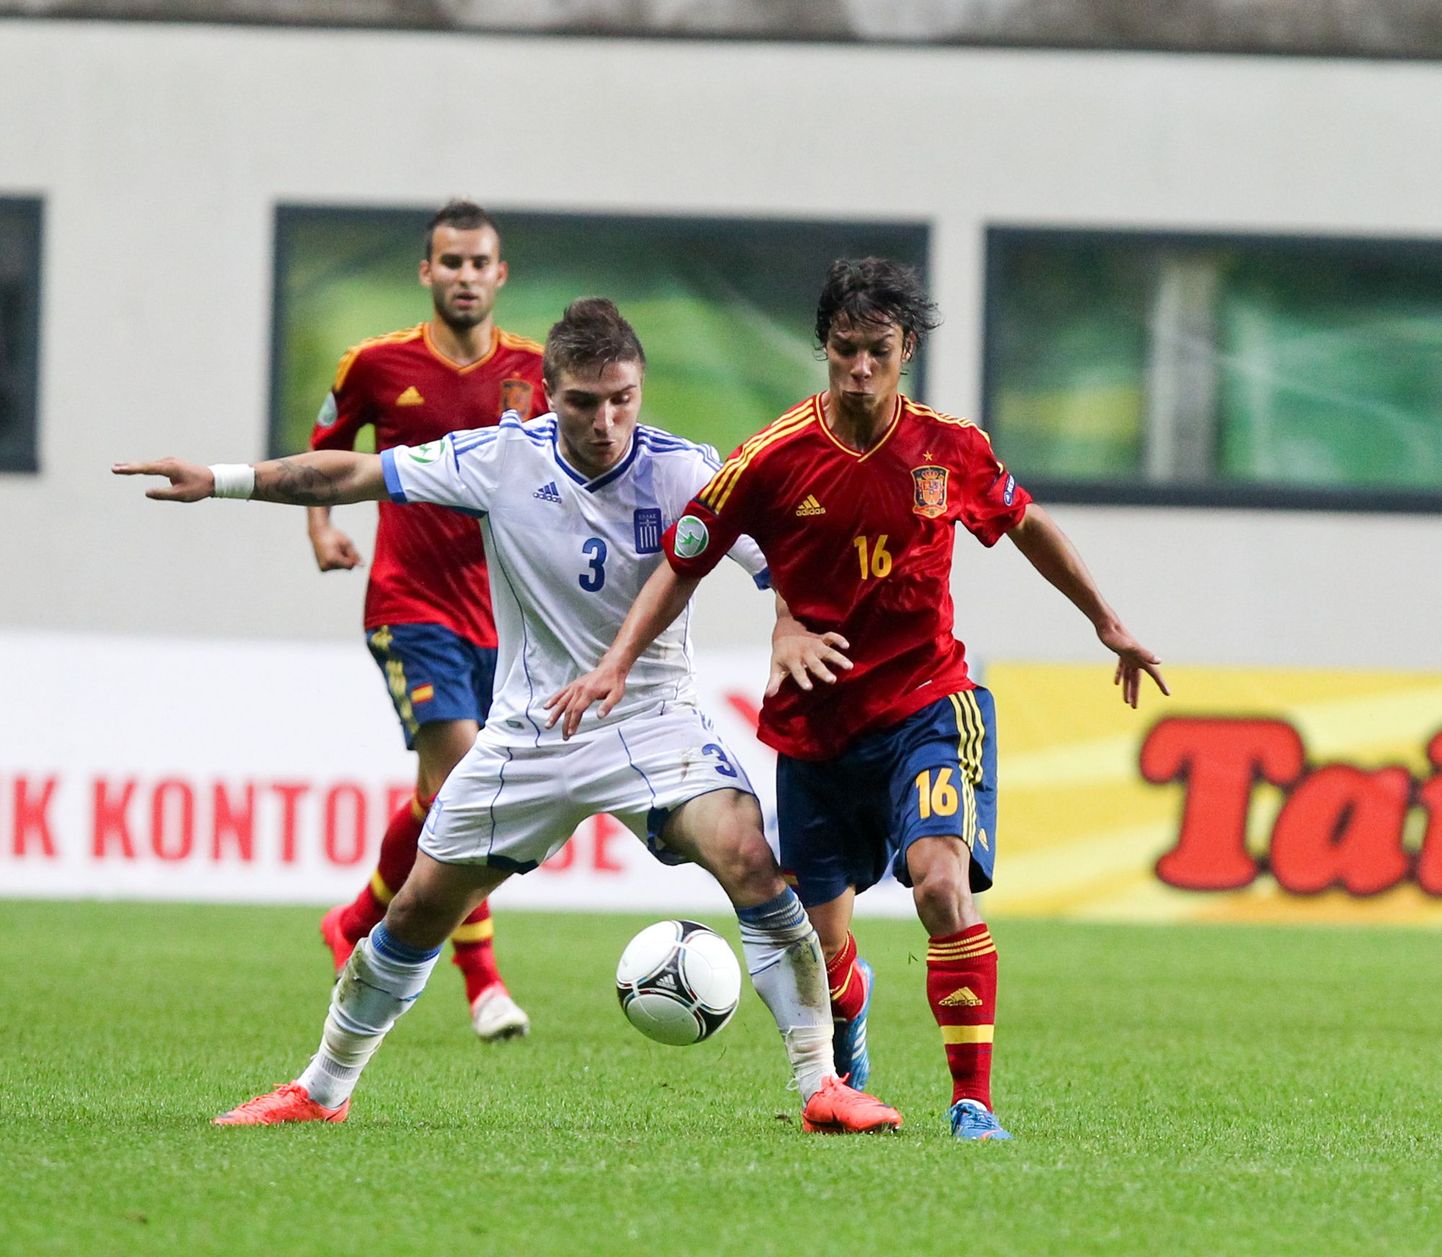 Hispaania ja Kreeka selgitavad Tallinnas U19 vanuseklassi Euroopa meistri.